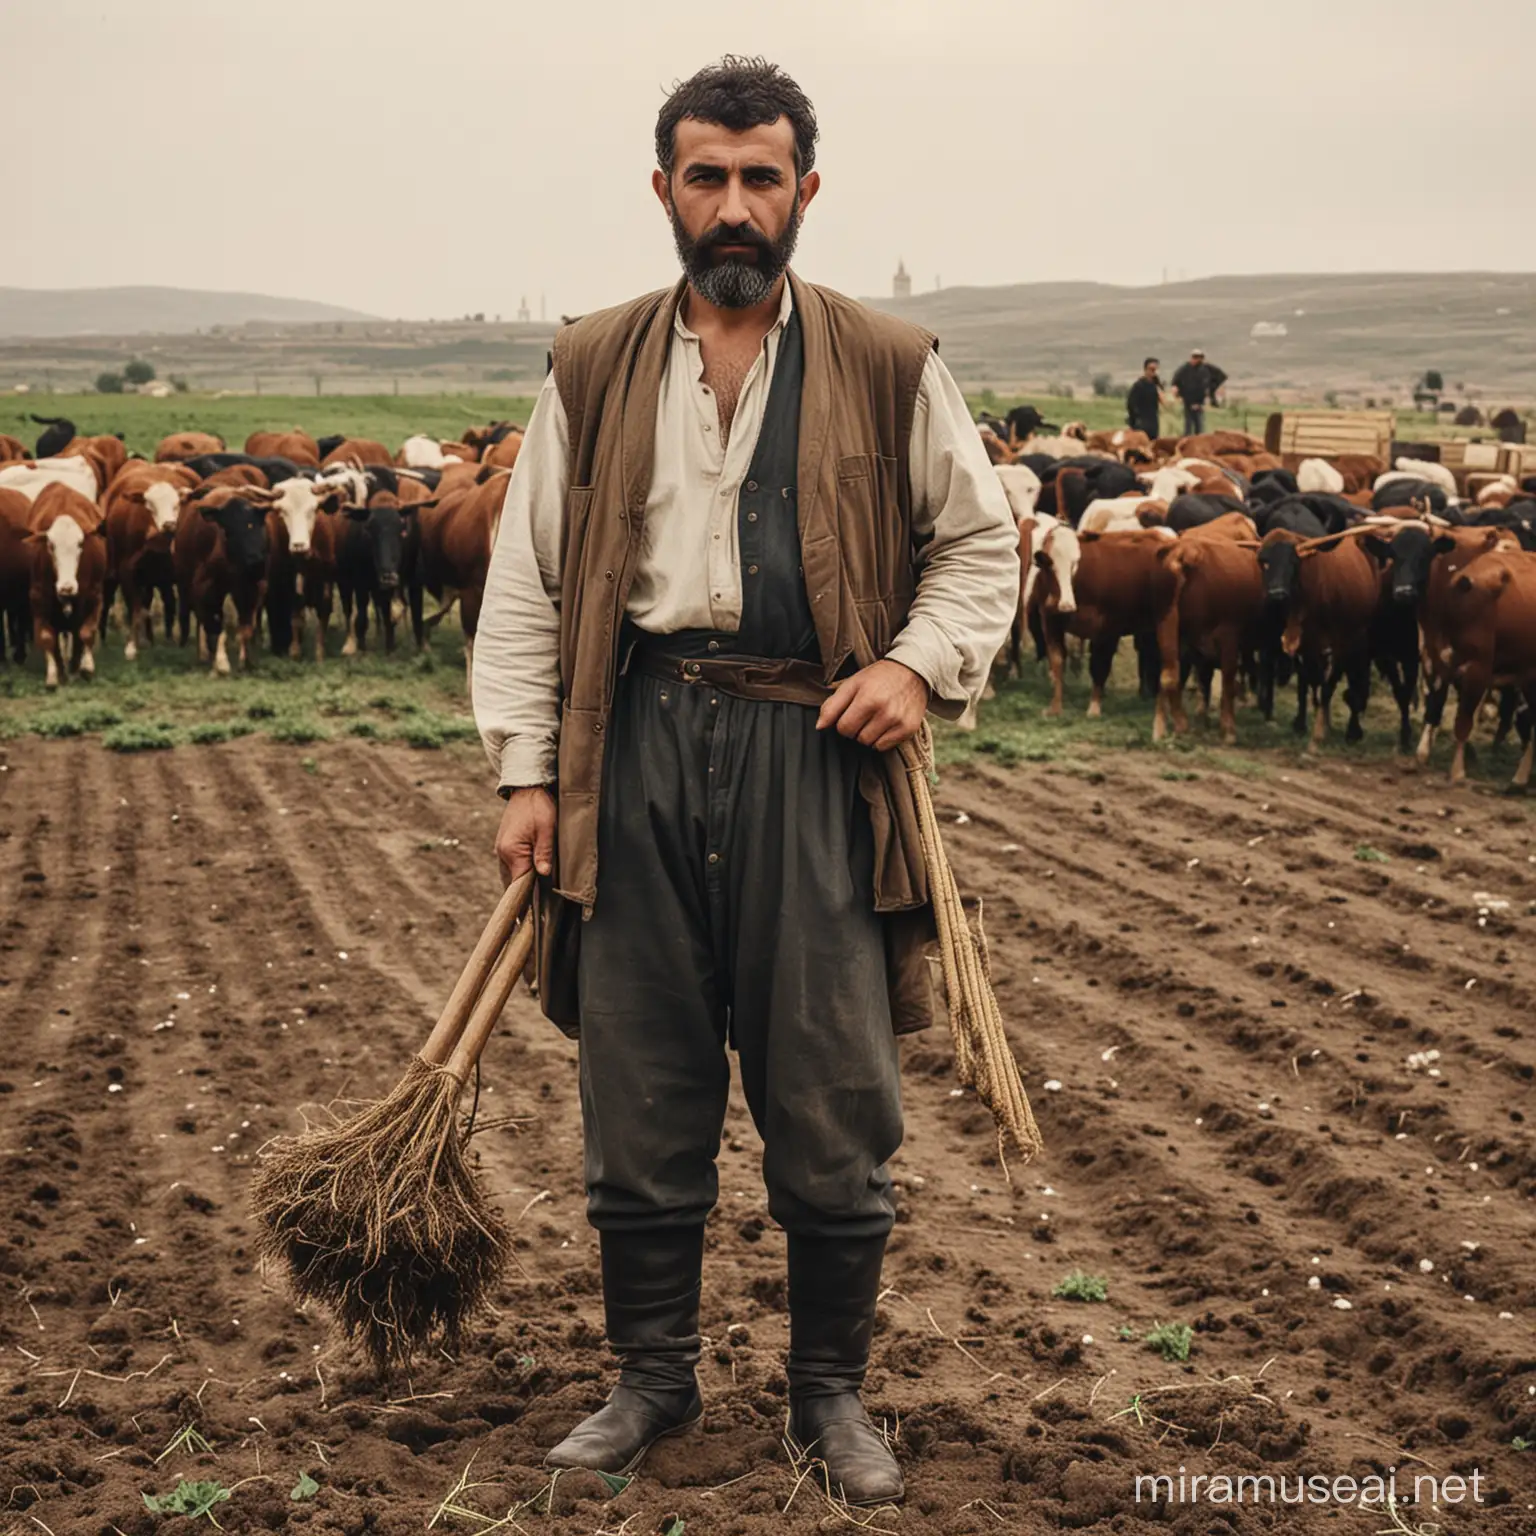 cumhuriyet döneminde çiftçilik yapan türk vatandaşı
